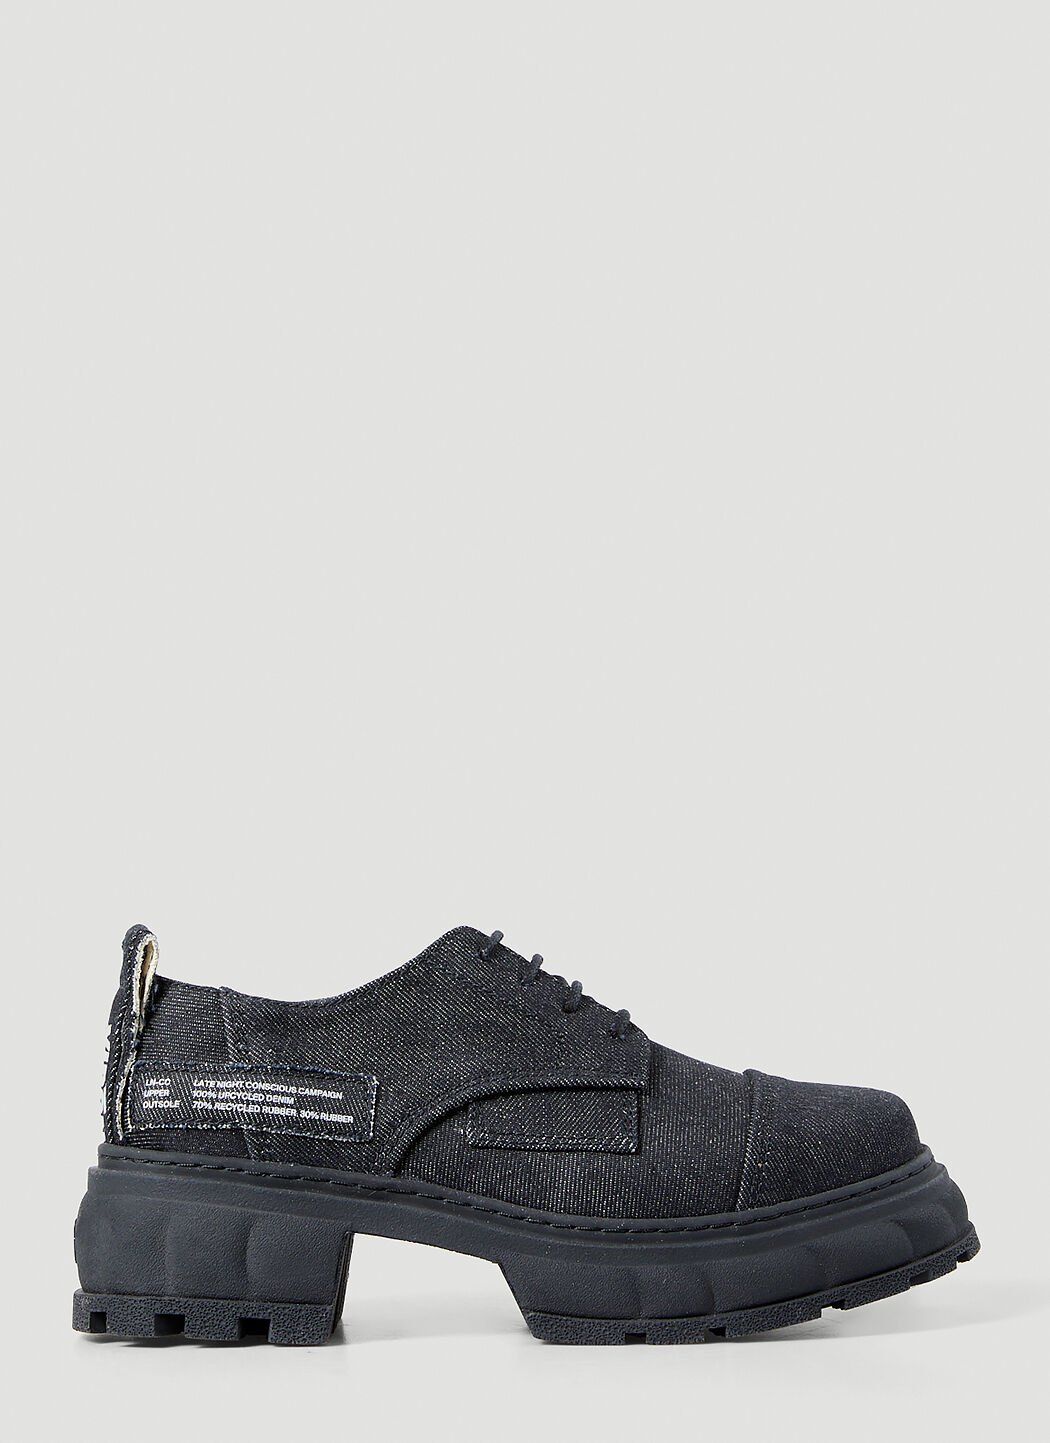 Vivienne Westwood x LN-CC Alter Denim Shoes Black vvw0255059